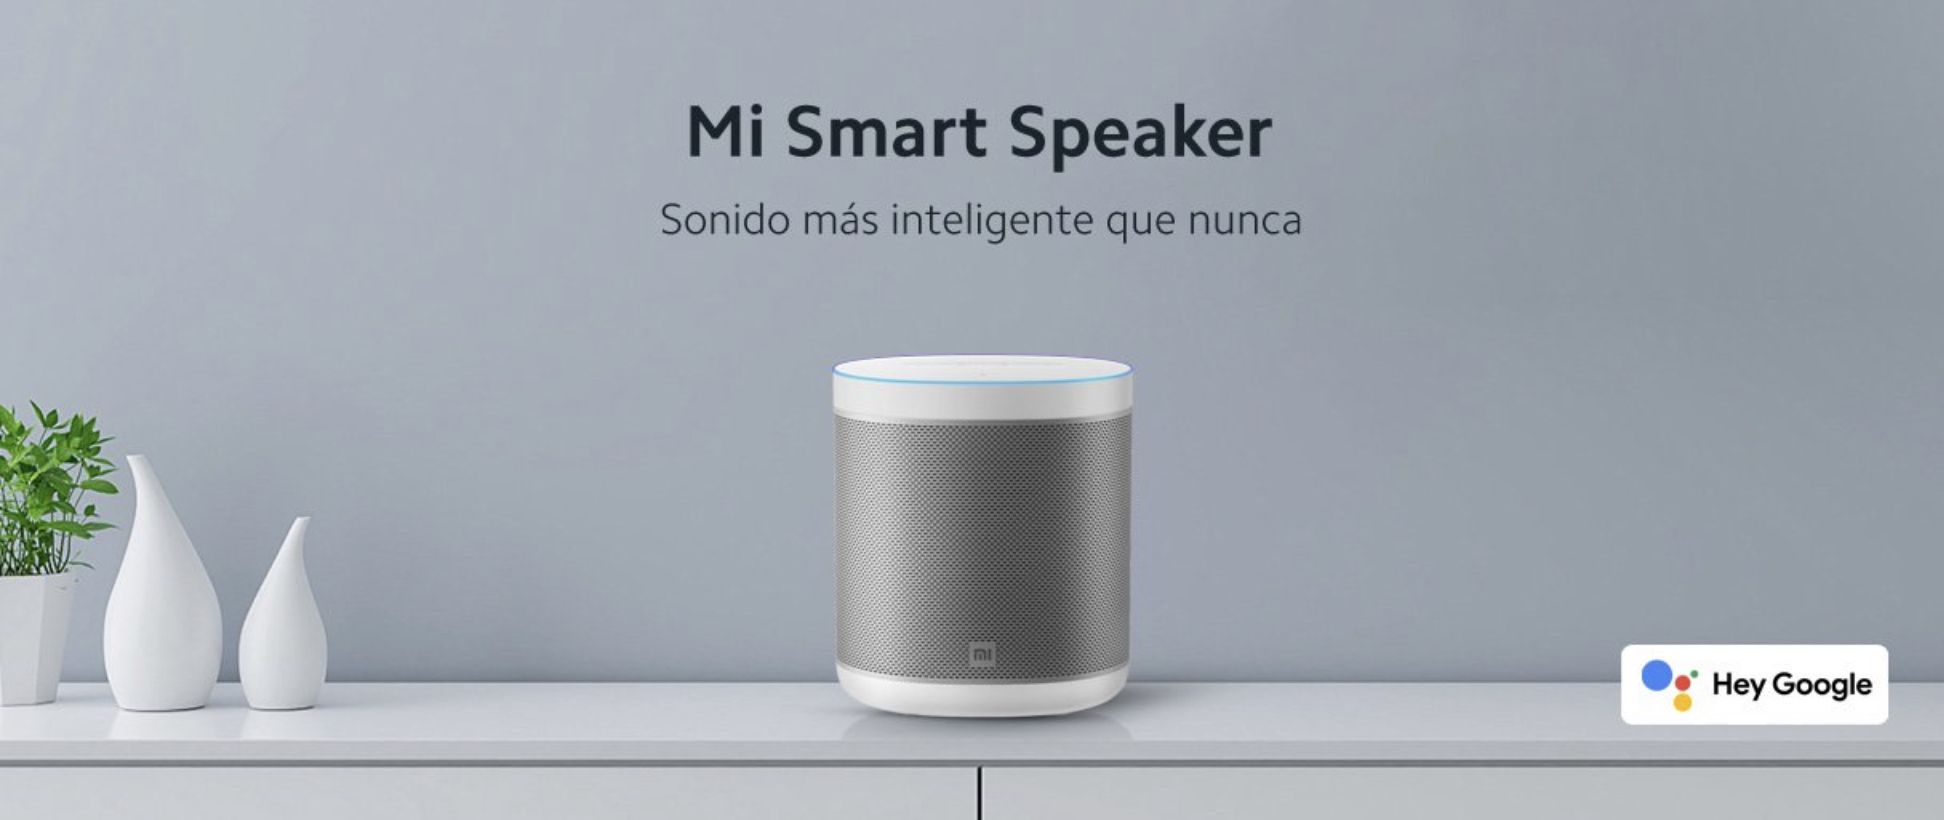 Mi-smart-speaker-xiaomi